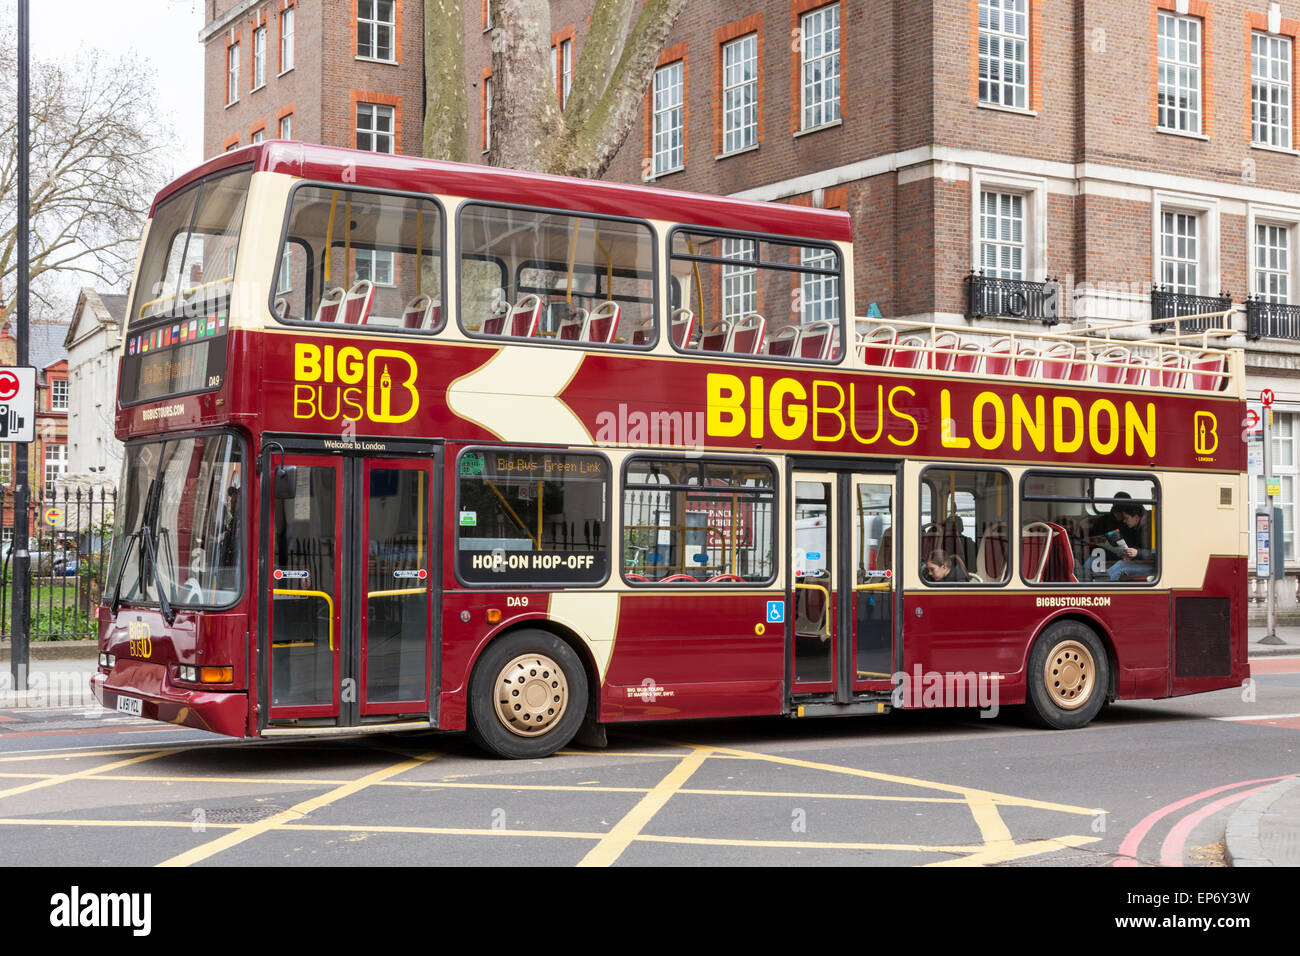 Big Bus London bus tour, London, England, UK Banque D'Images